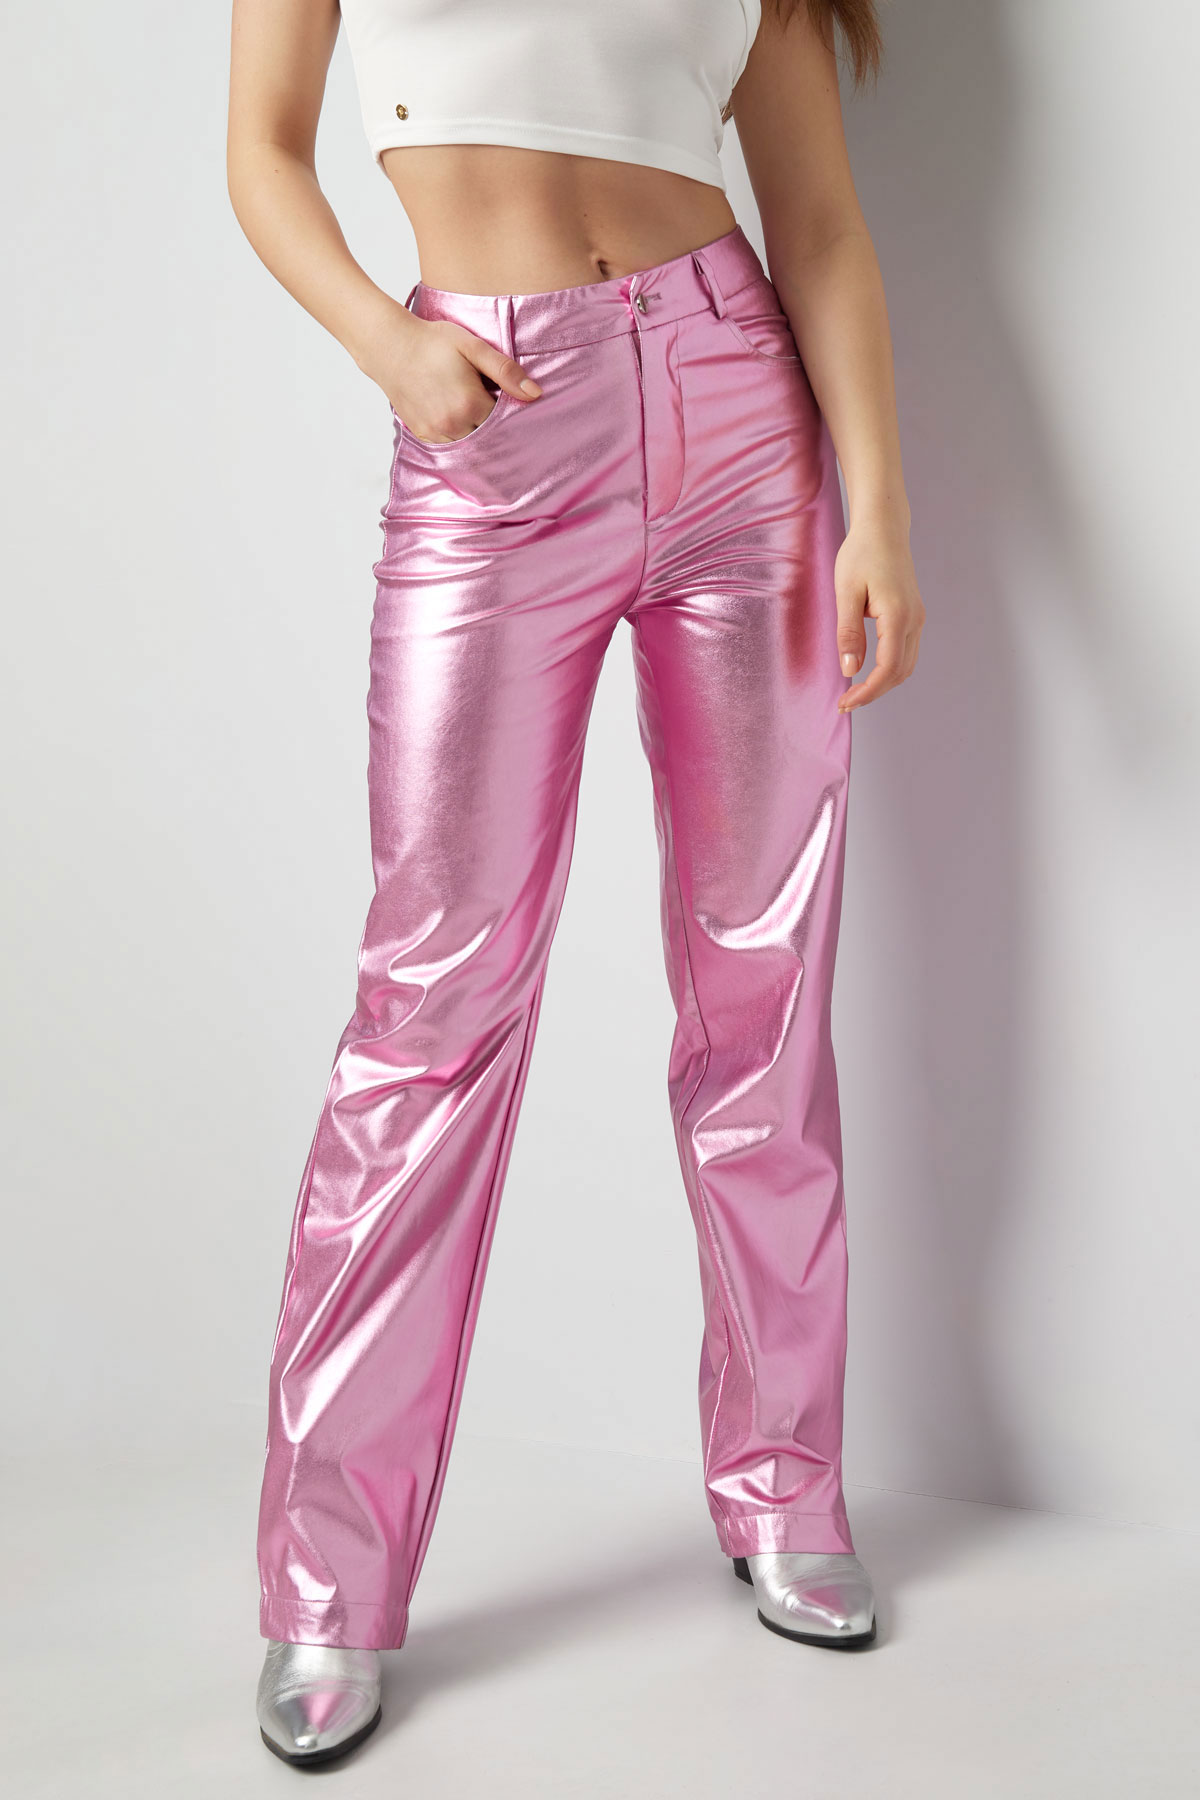 Pantaloni metallizzati - argento h5 Immagine2